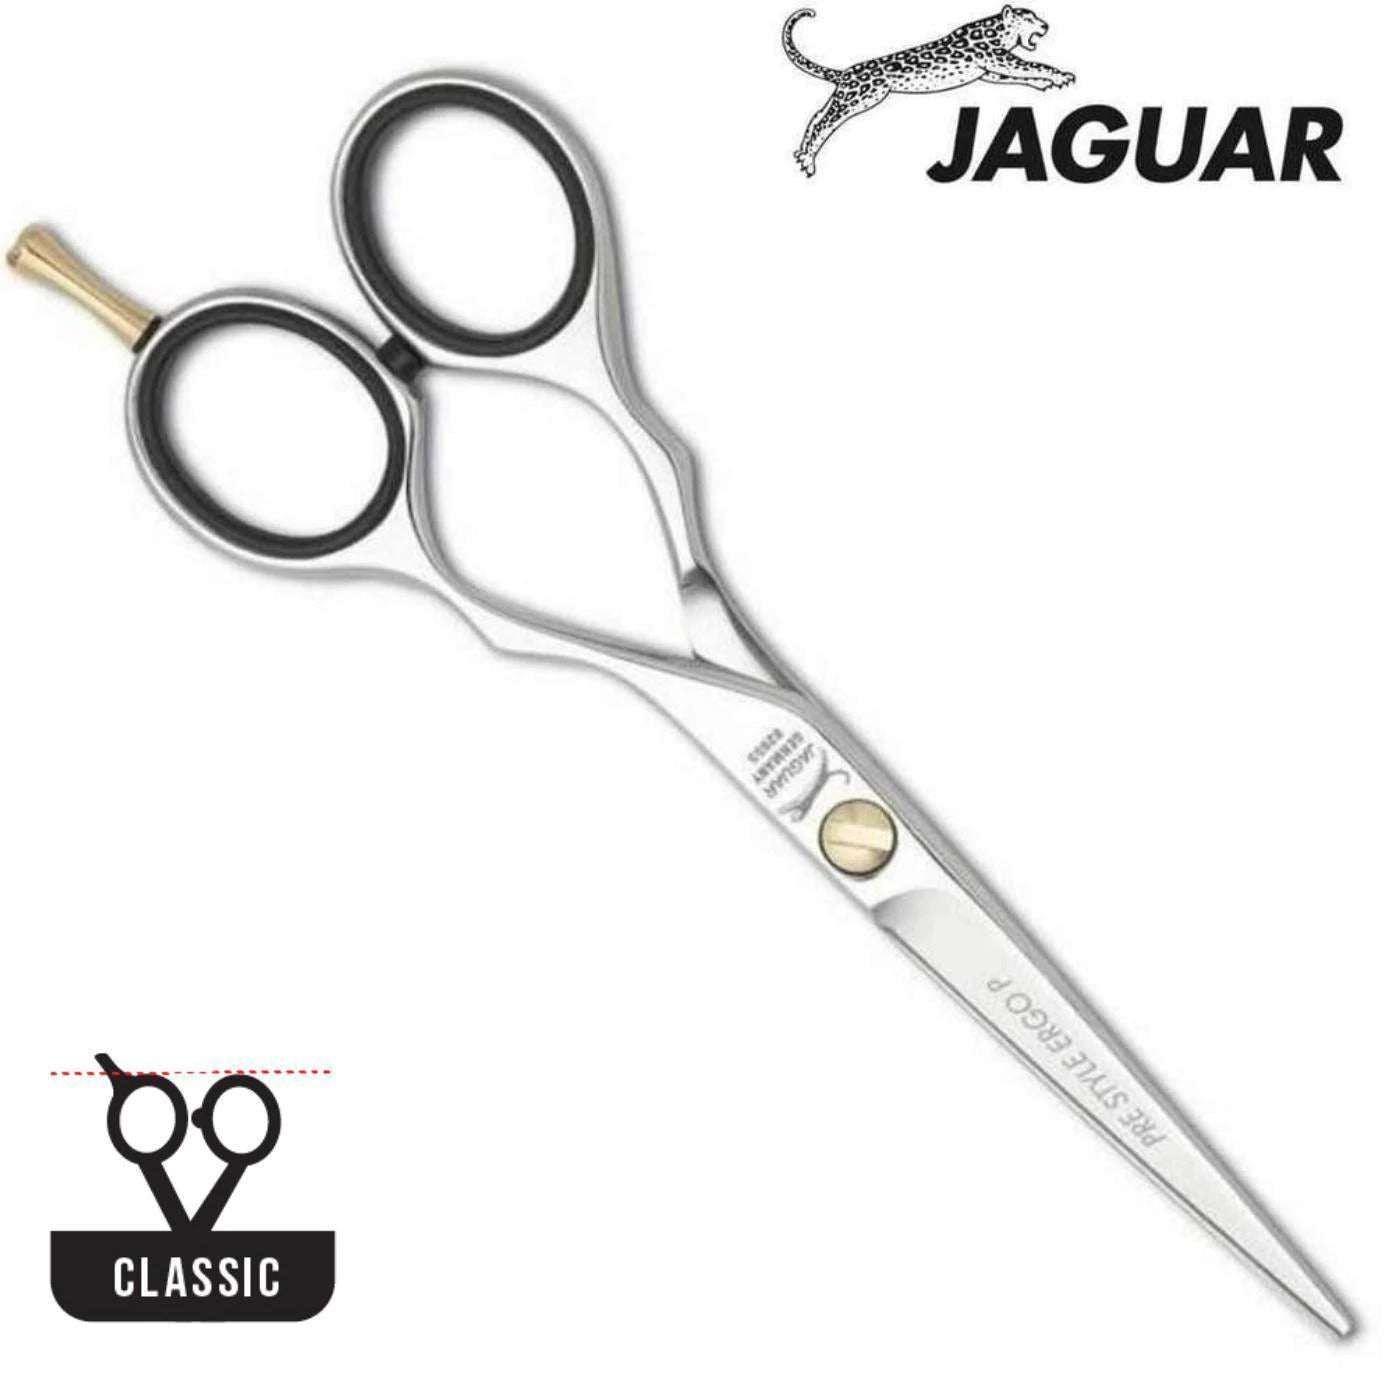 The Jaguar beginner pre style ergo scissors